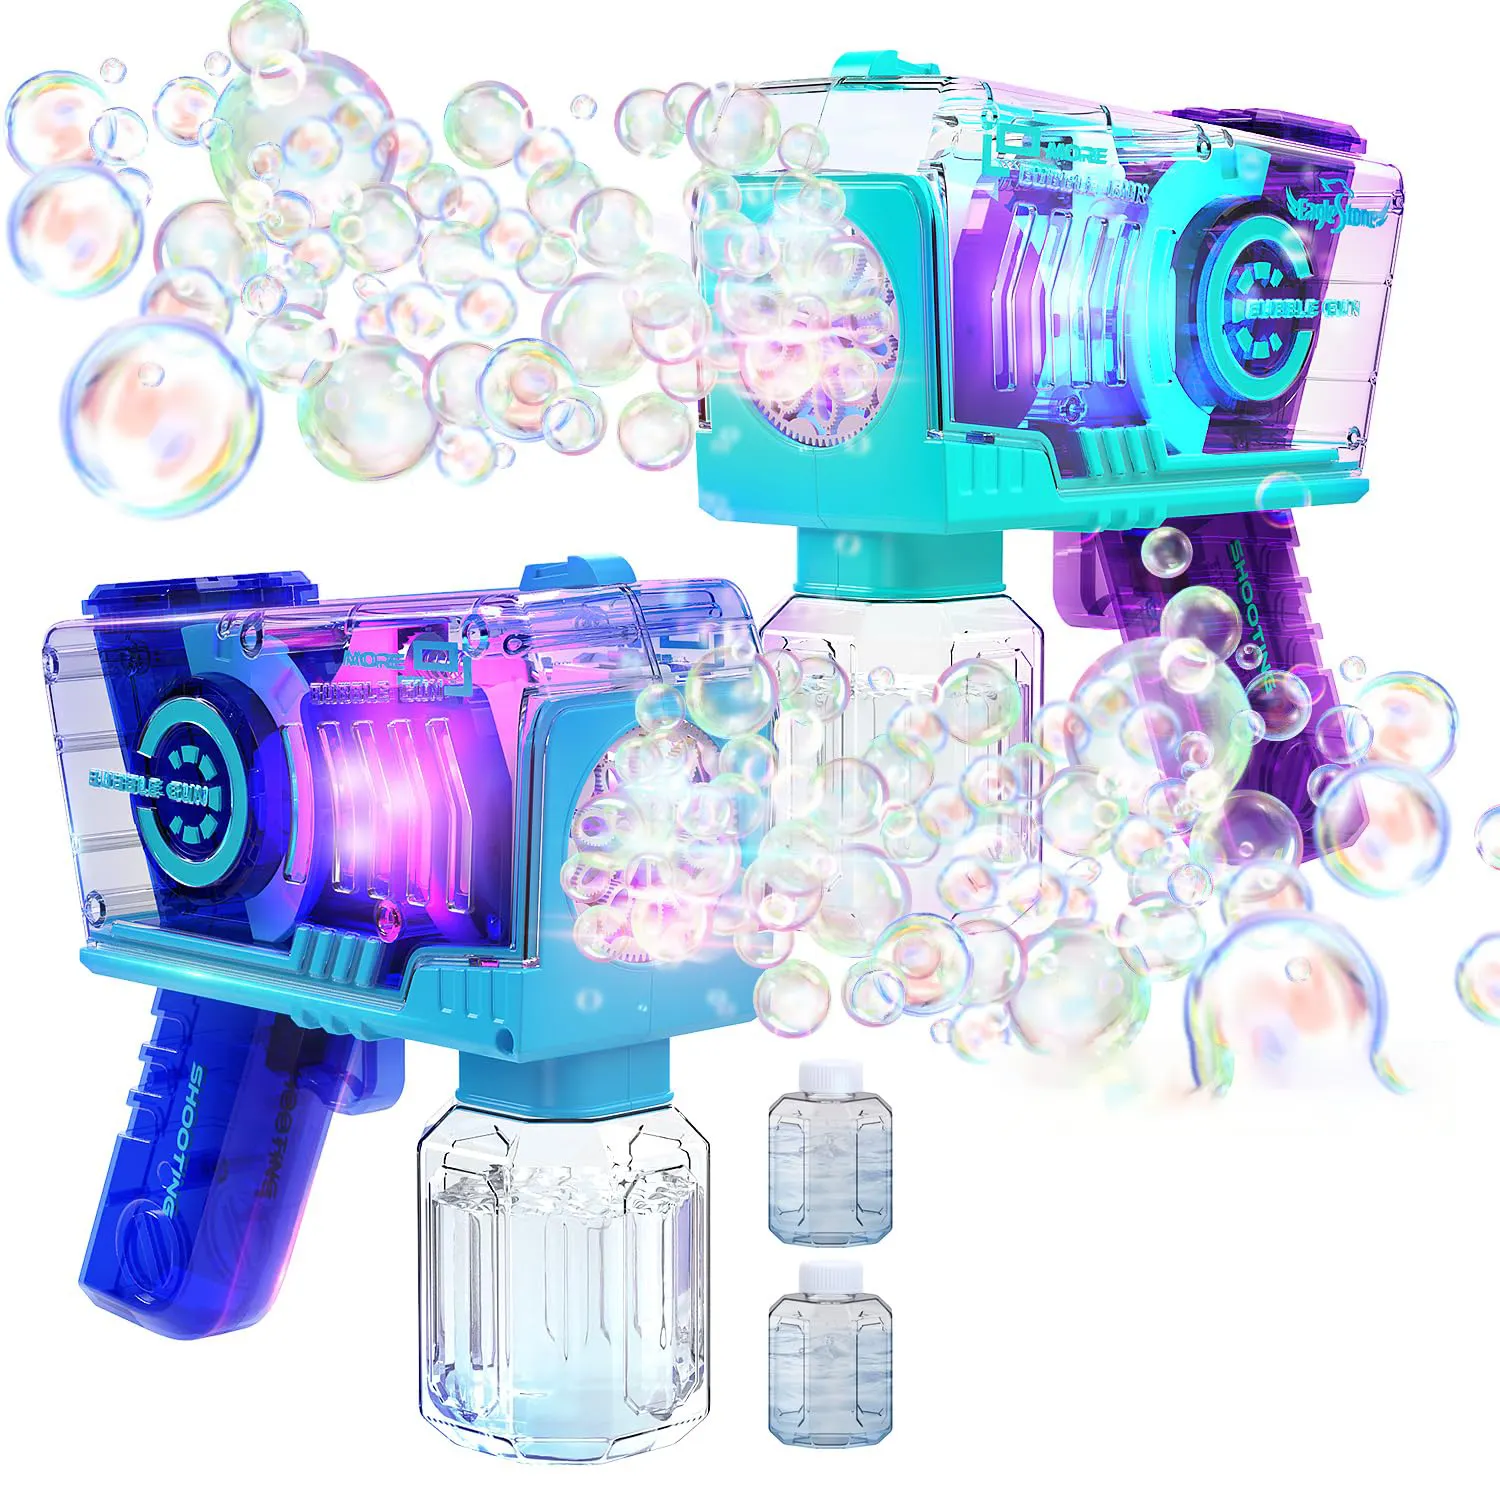 子供のためのクールなライトアップ透明バブルガンマシンおもちゃパーティーバブルブロワーメーカーおもちゃ夏の石鹸水おもちゃ